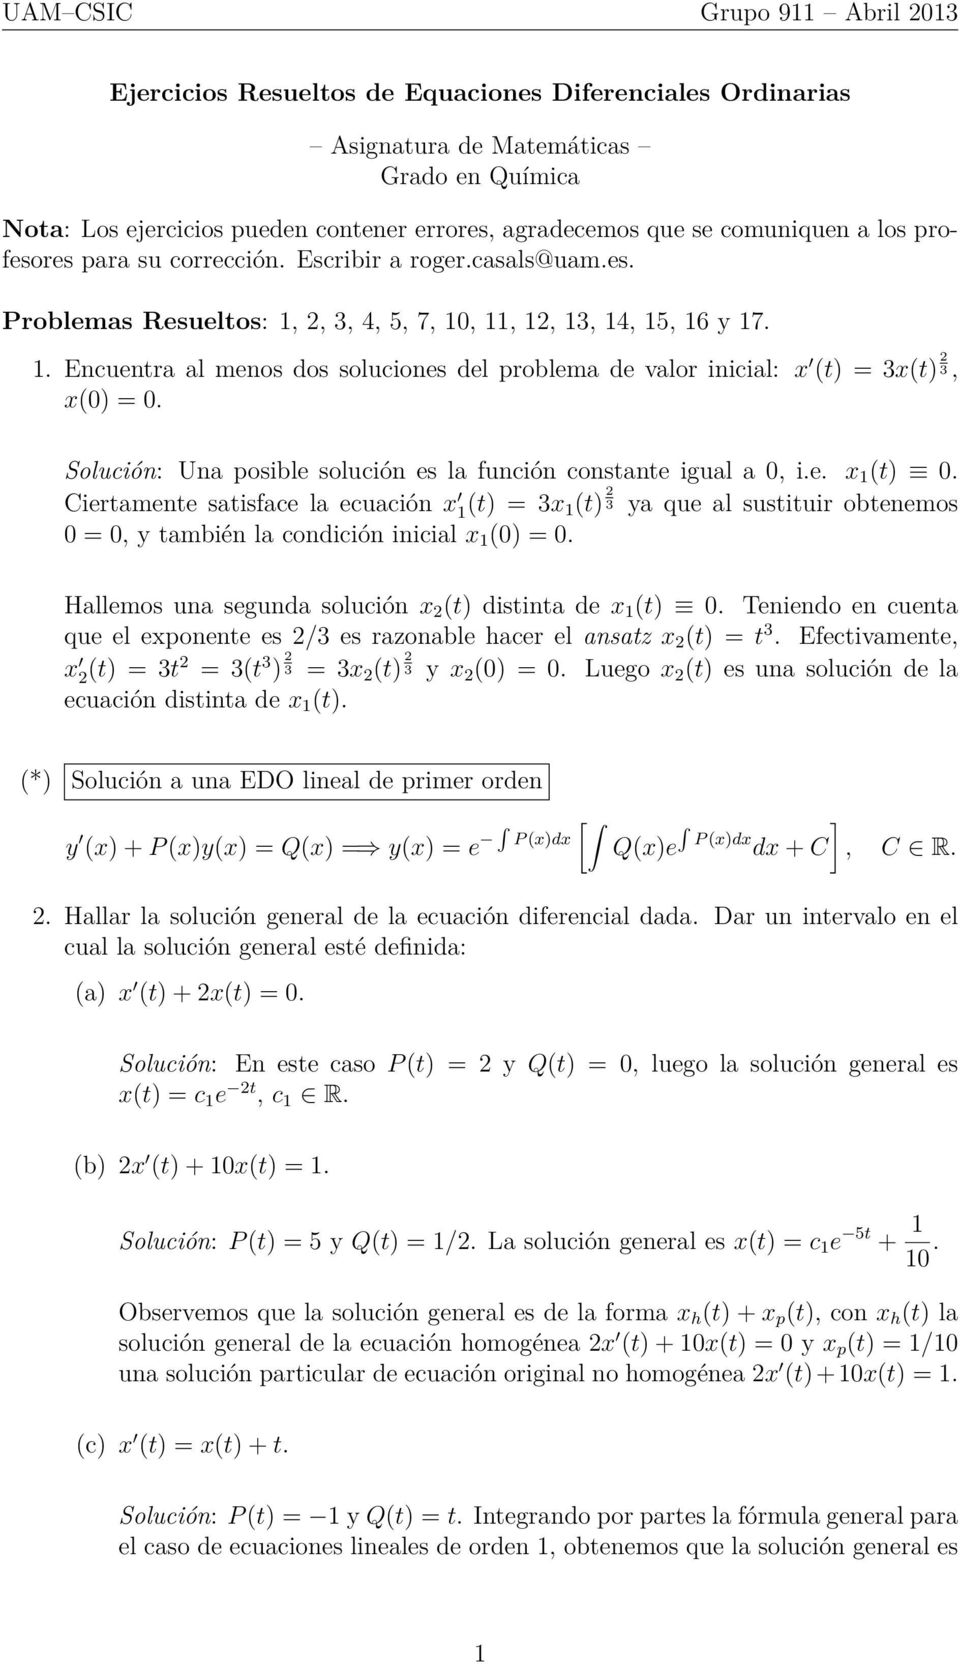 inicial: t t 2, 0 0 Solución: Una posible solución es la función constante igual a 0, ie 1 t 0 Ciertamente satisface la ecuación 1t 1 t 2 a que al sustituir obtenemos 0 0, también la condición